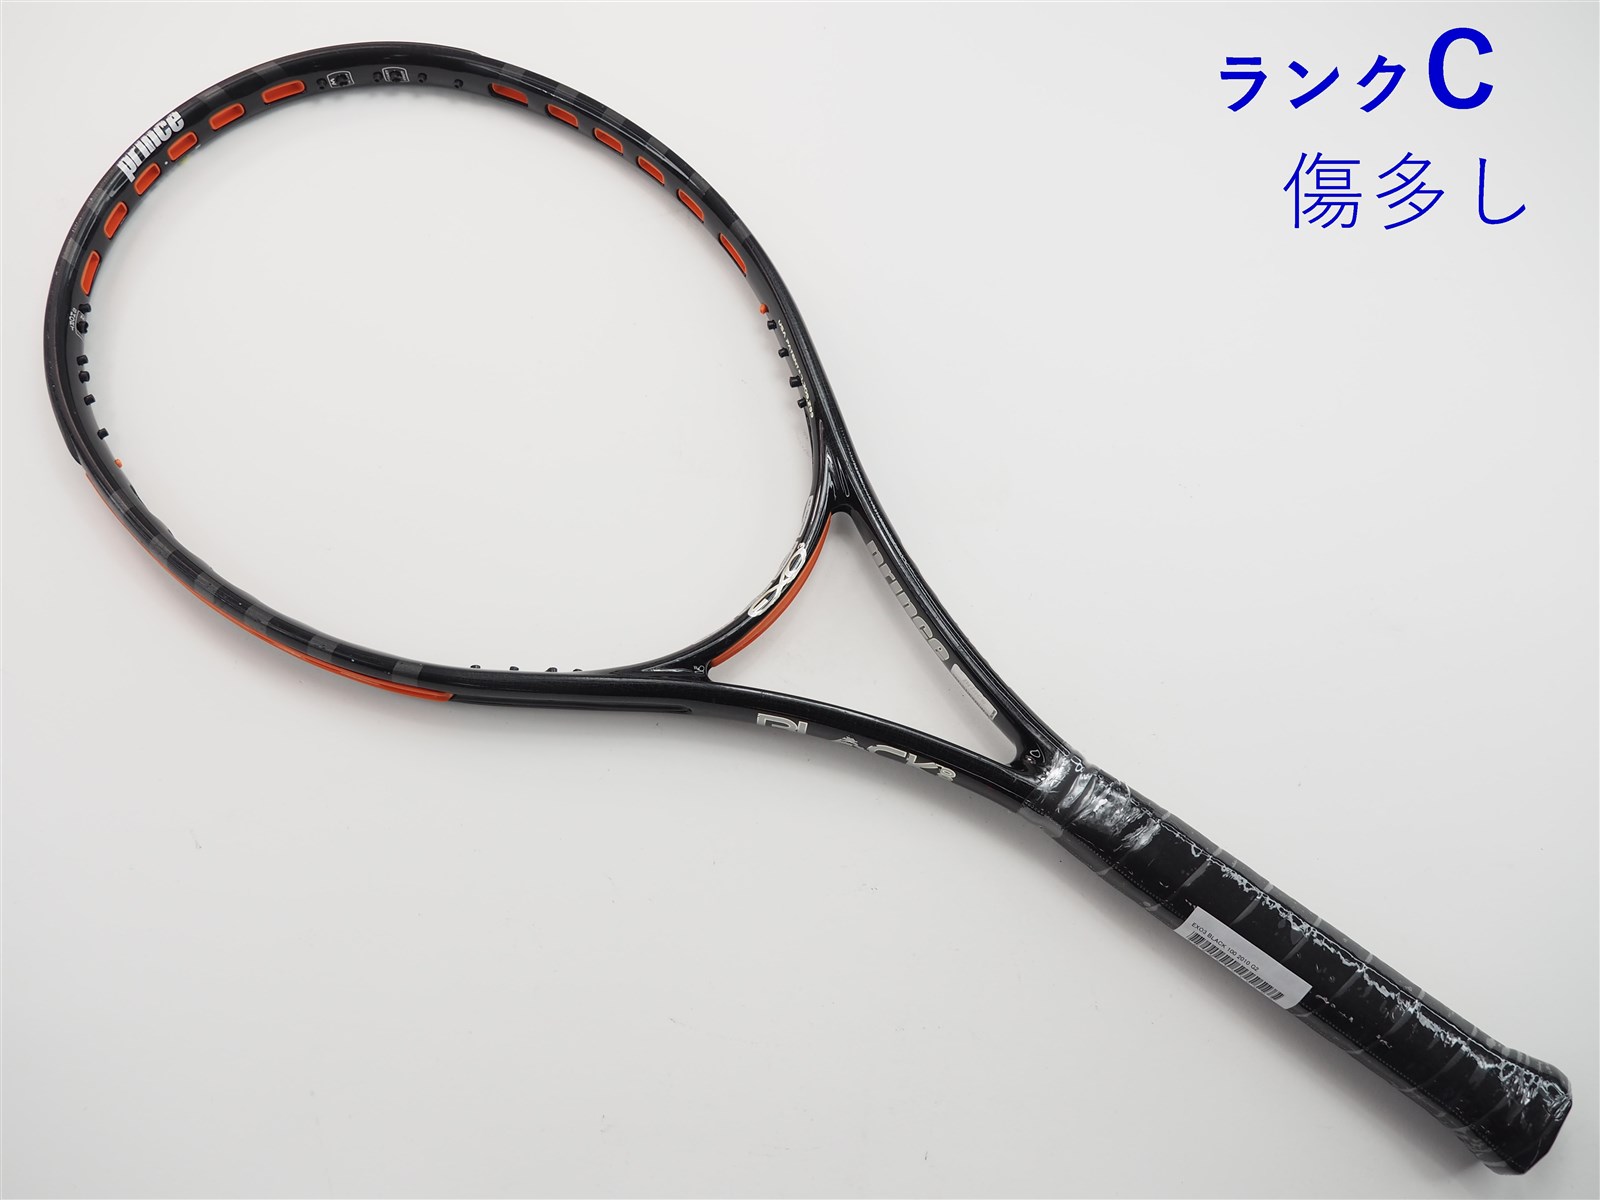 テニスラケット プリンス エックス 100 ツアー 2019年モデル【一部